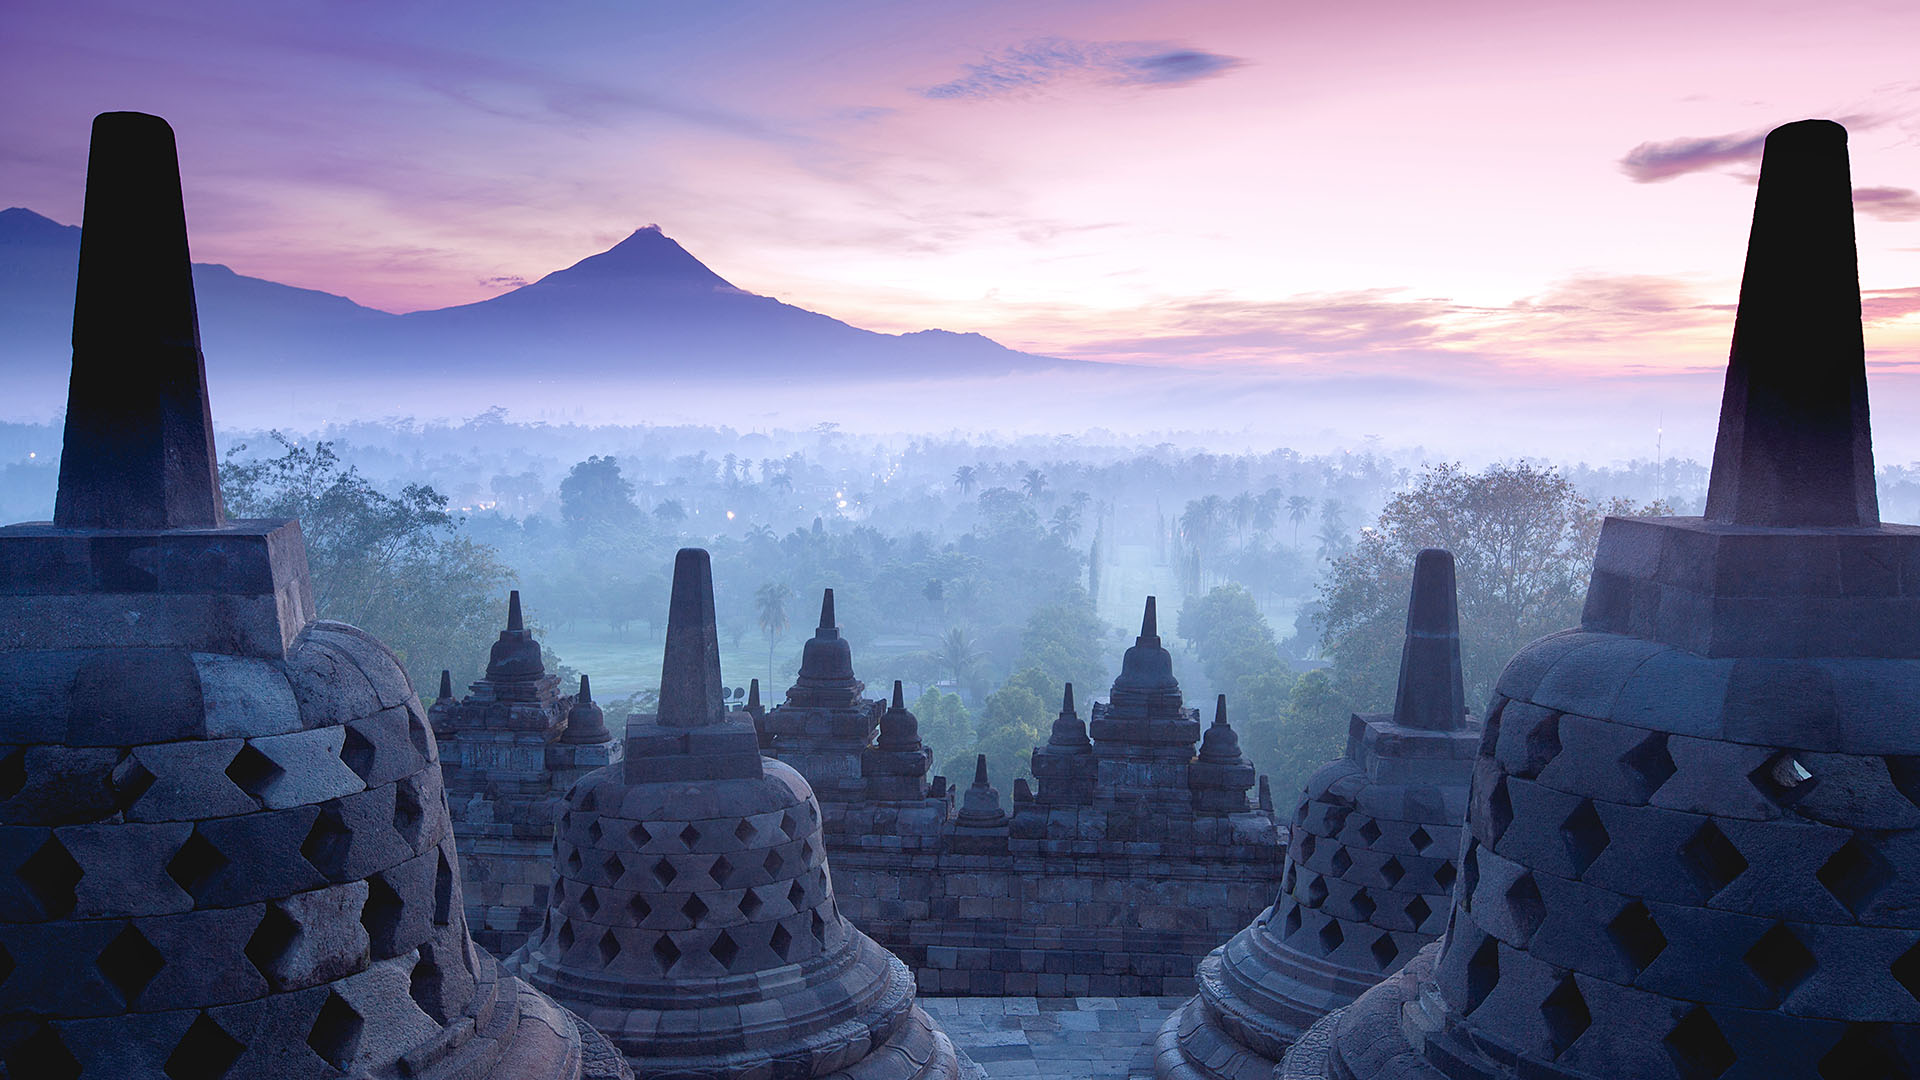 Borobudur Temple is sunrise, Yogyakarta, Java, Indonesia.